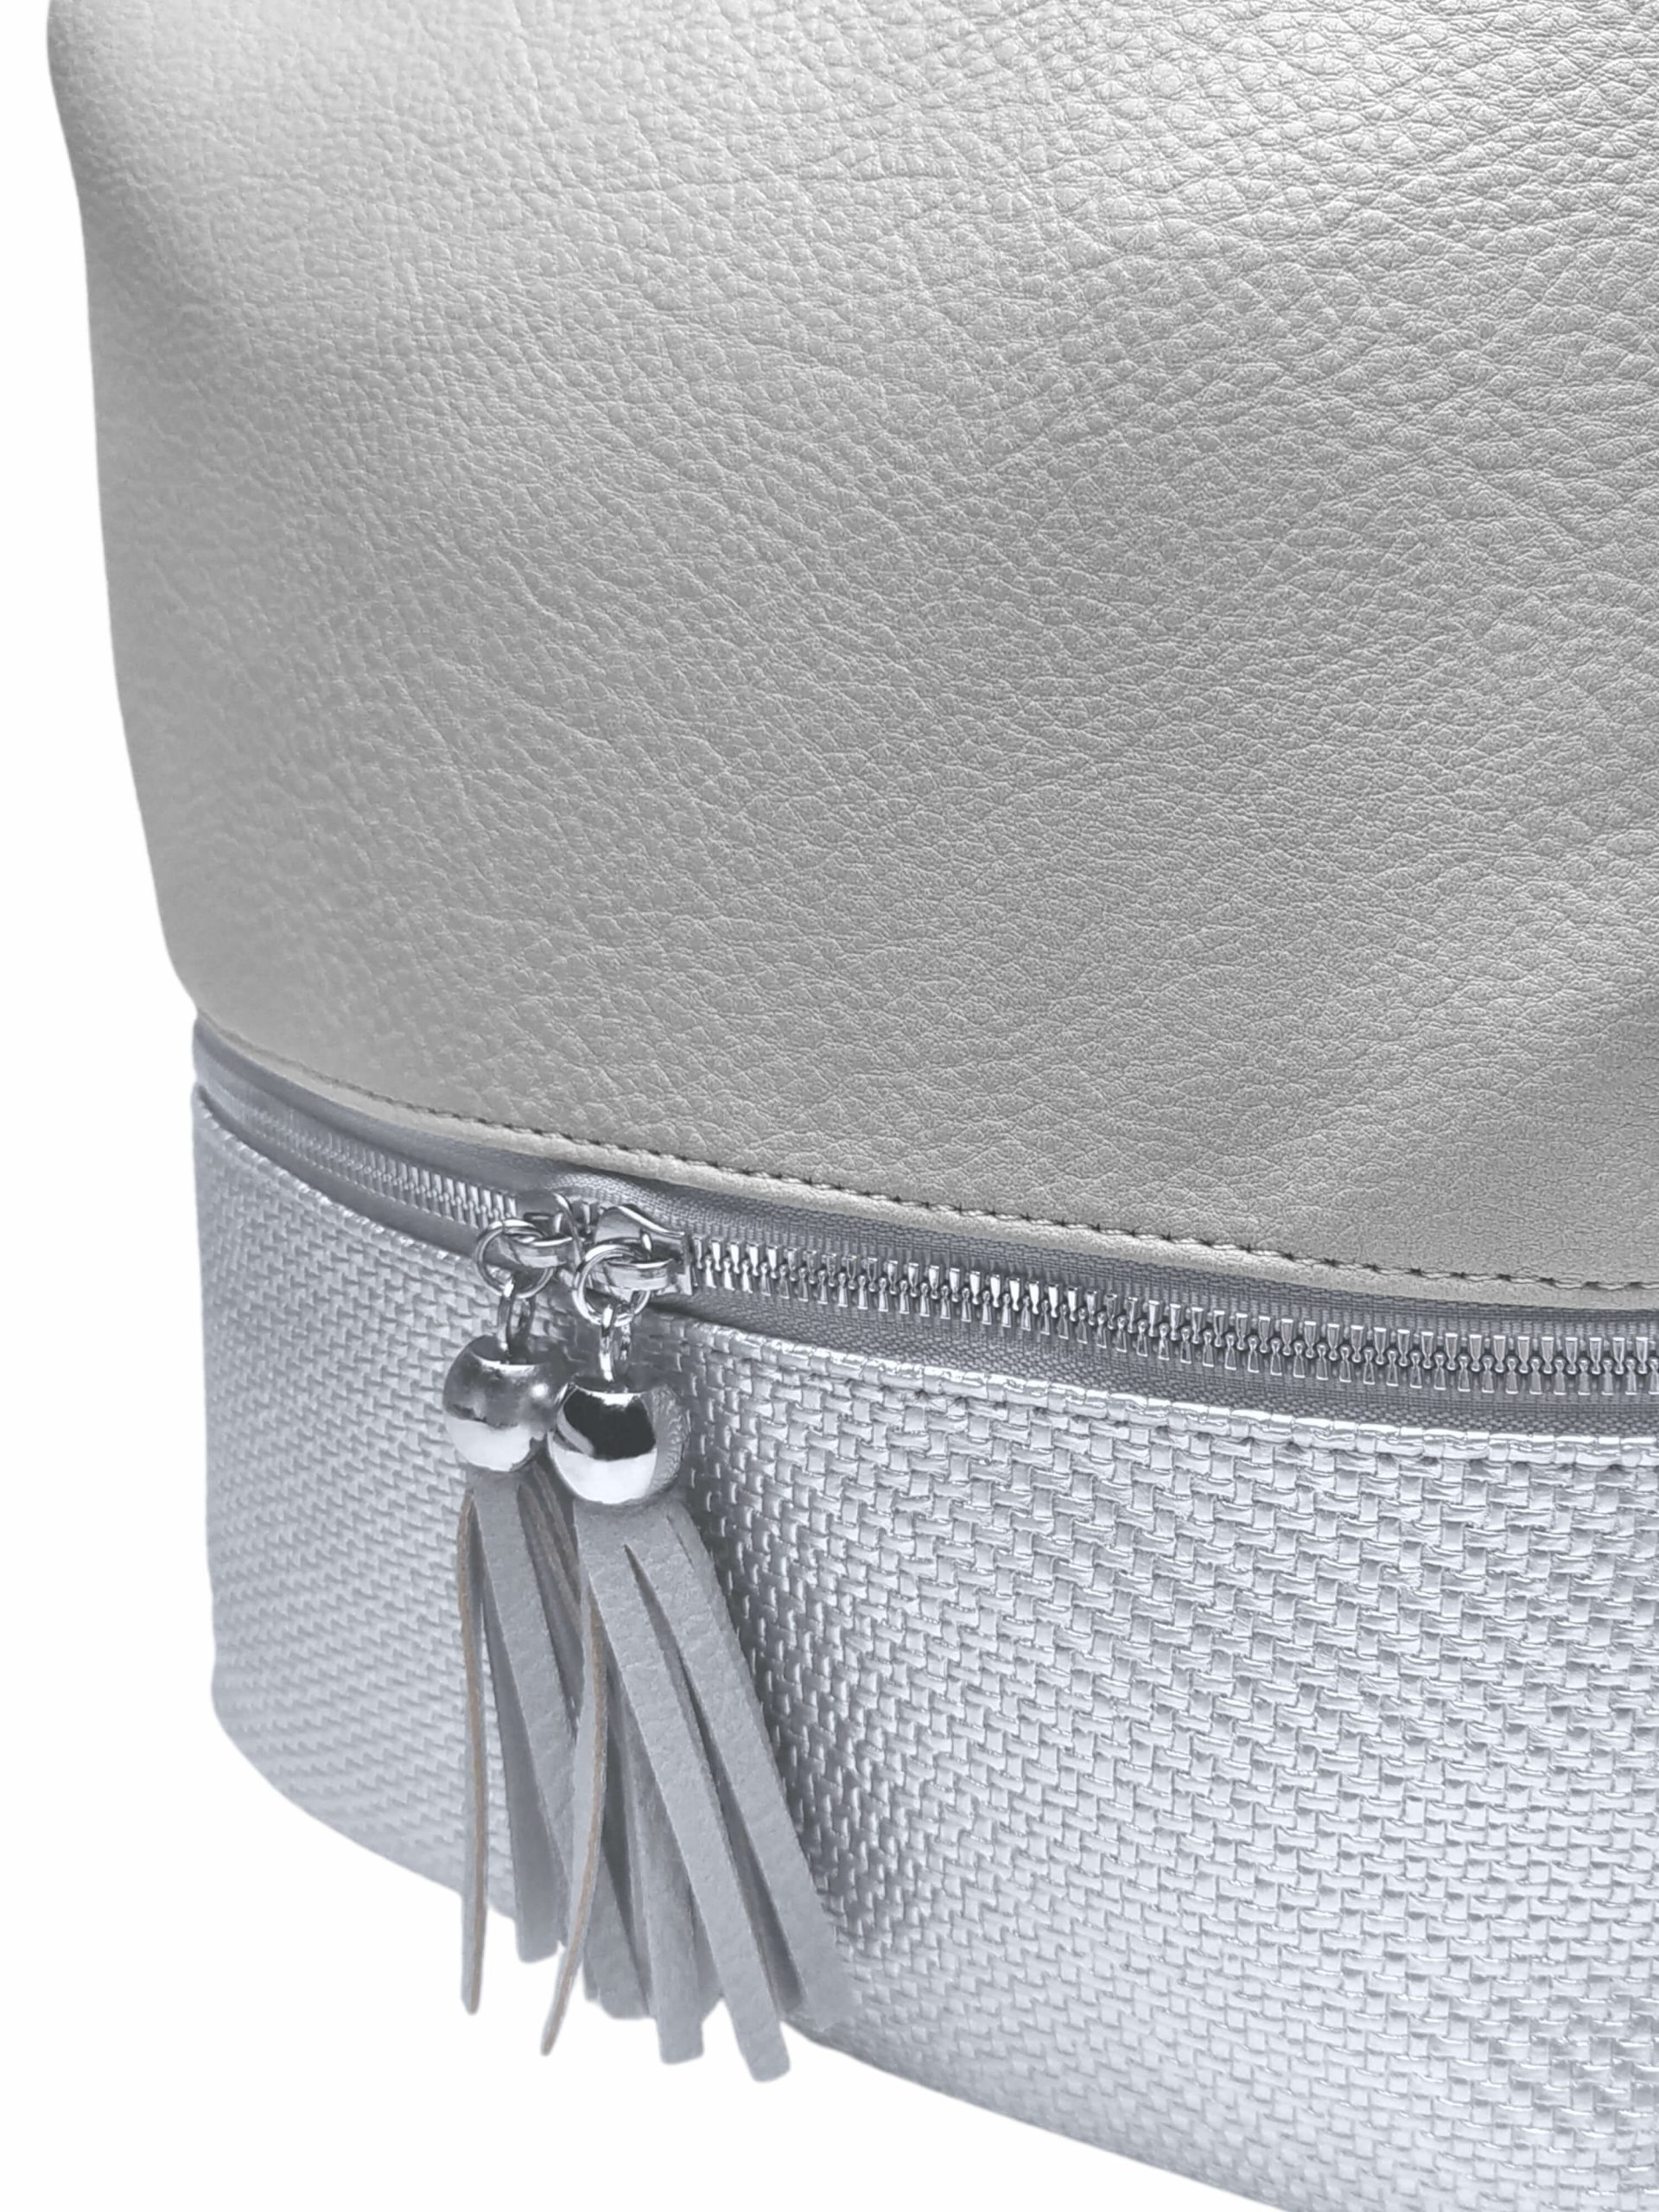 Střední světle šedý kabelko-batoh 2v1 s třásněmi, Bella Belly, 5394, detail kabelko-batohu 2v1